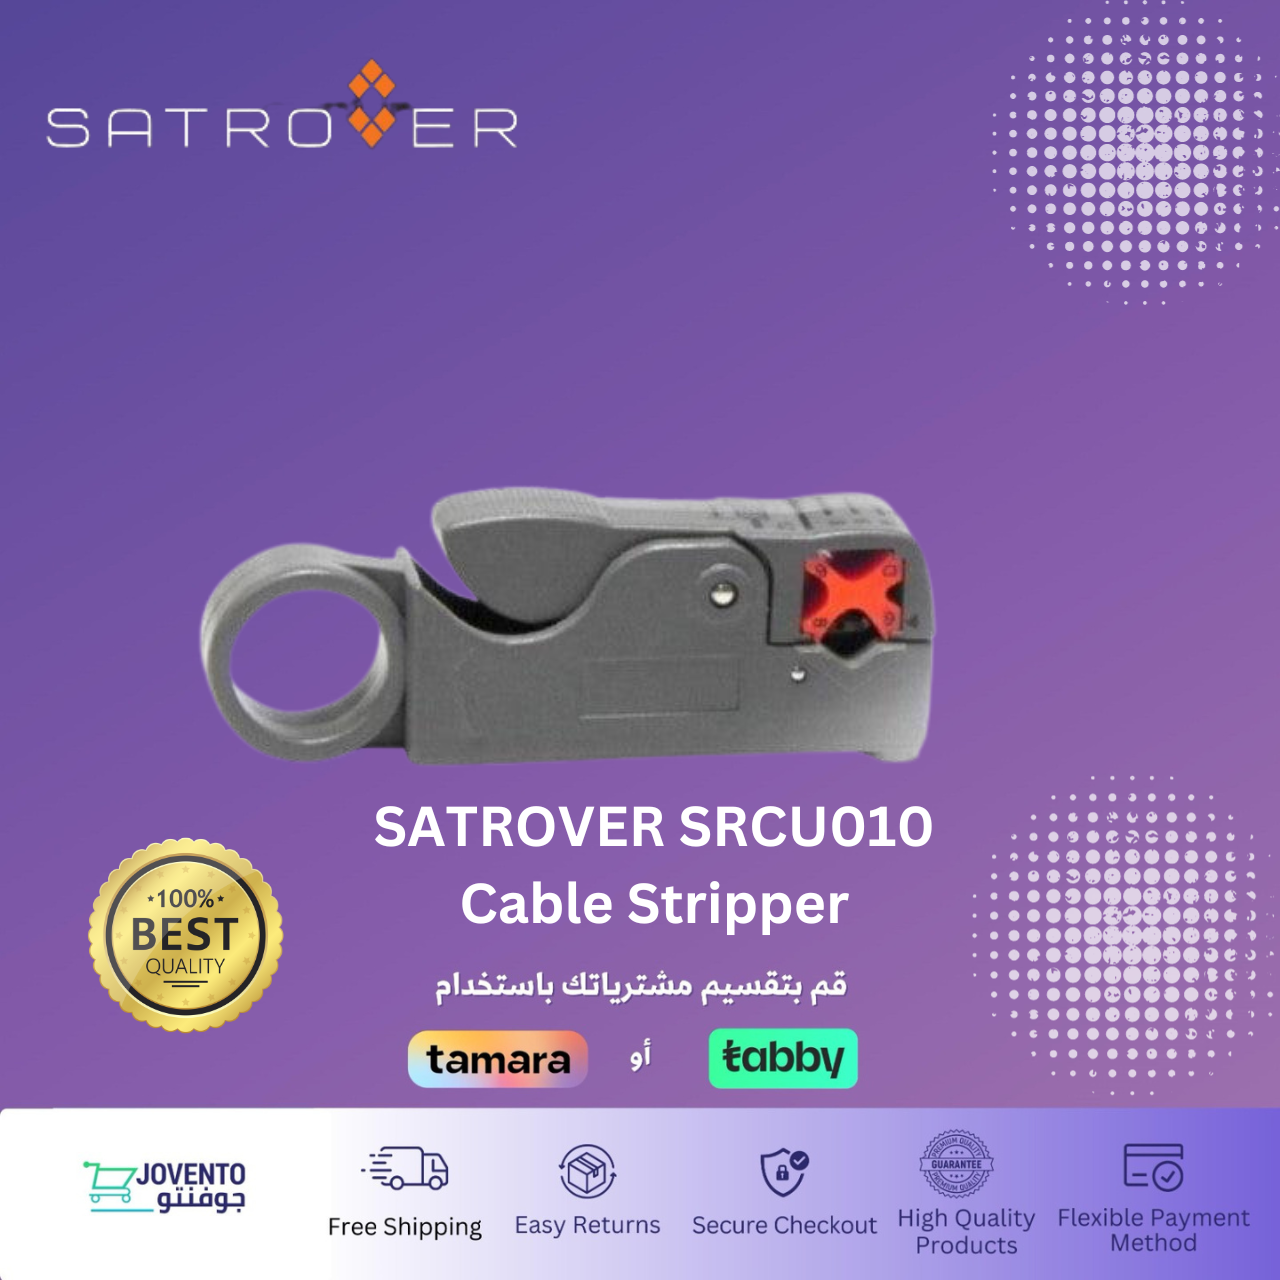 SATROVER SRCU010 Cable Stripper